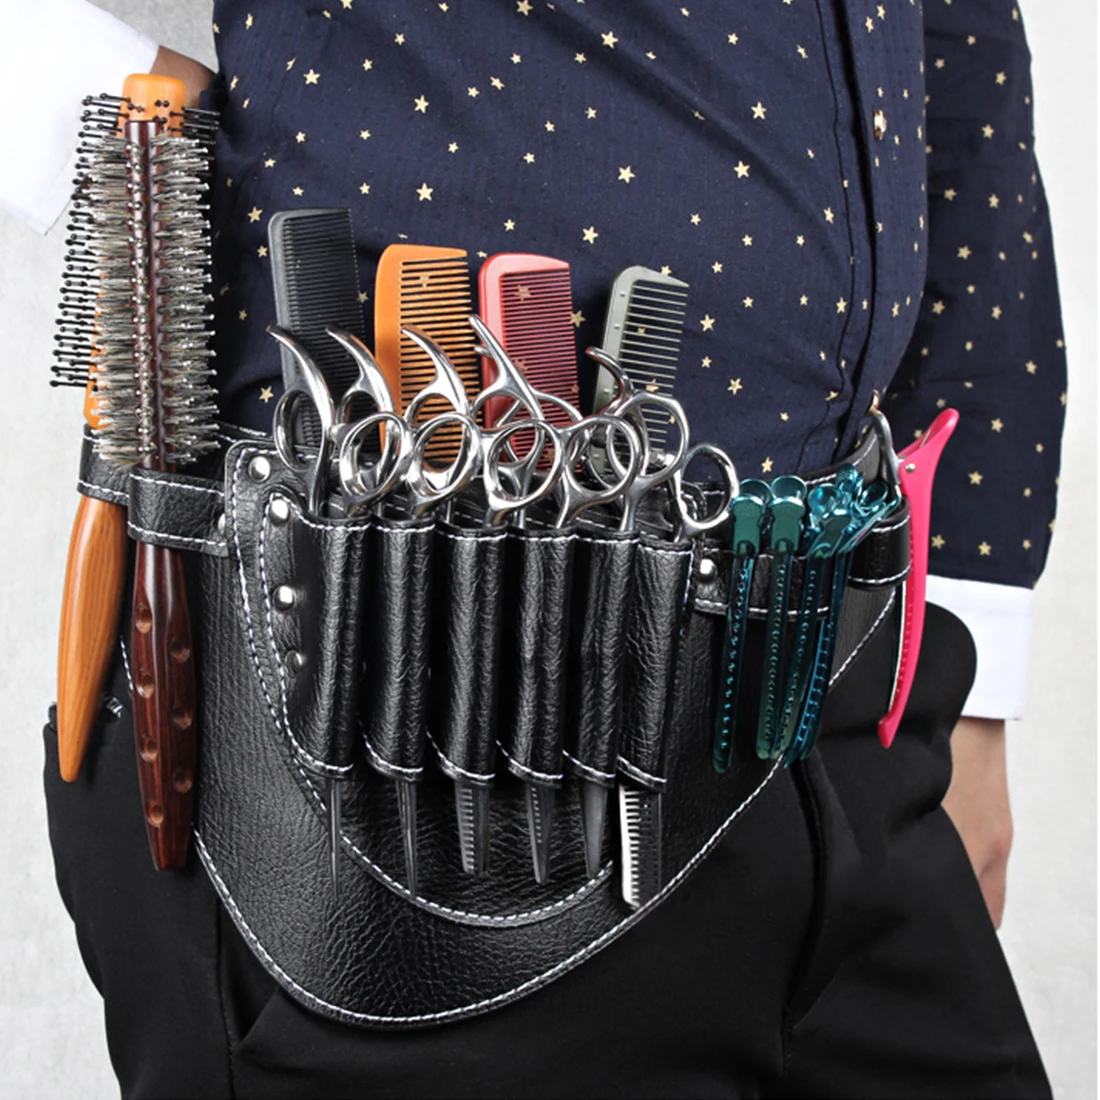 Подставка из искусственной кожи сумка для парикмахерских магазинные ножницы зажимы расчески парикмахерские салонные инструменты чехол для кобуры с поясом на плечо